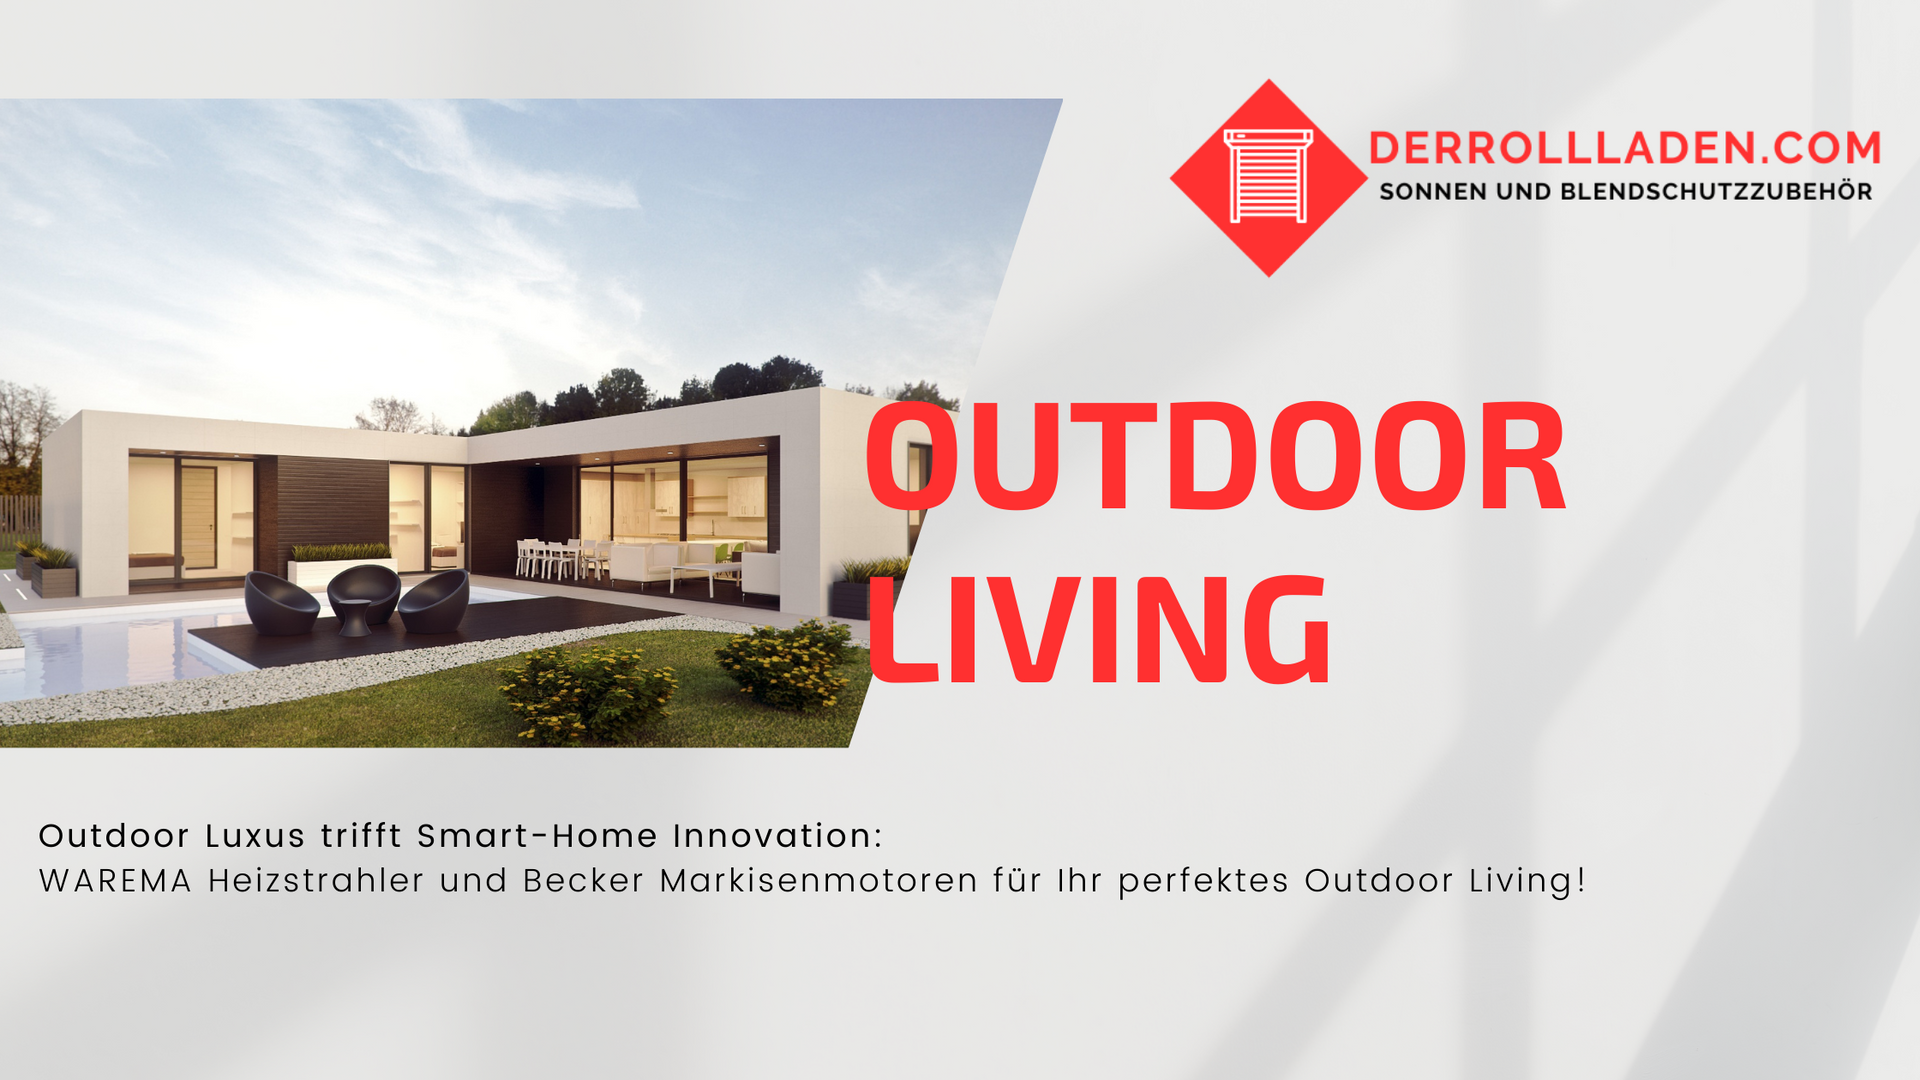 Einblick in die Zukunft: Ein modernes Smart Home, perfekt abgestimmt für luxuriöses Outdoor Living m